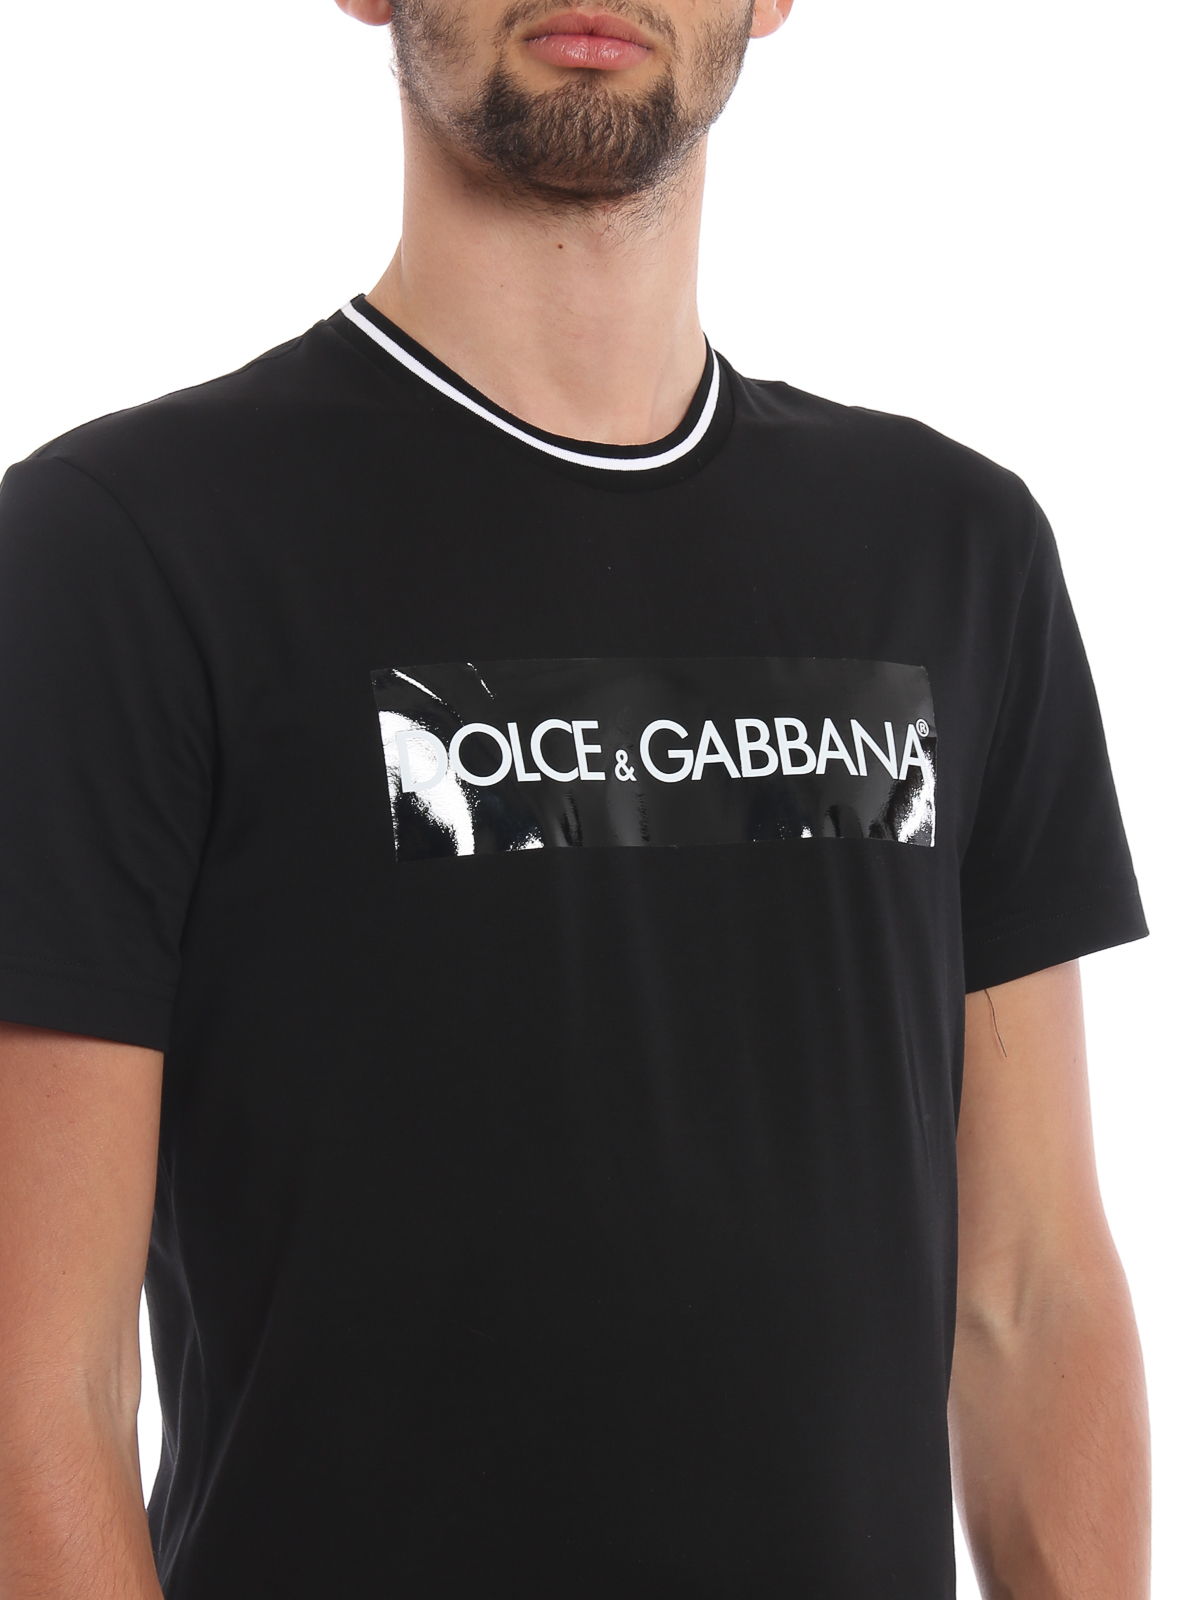 dolce gabbana black t shirt